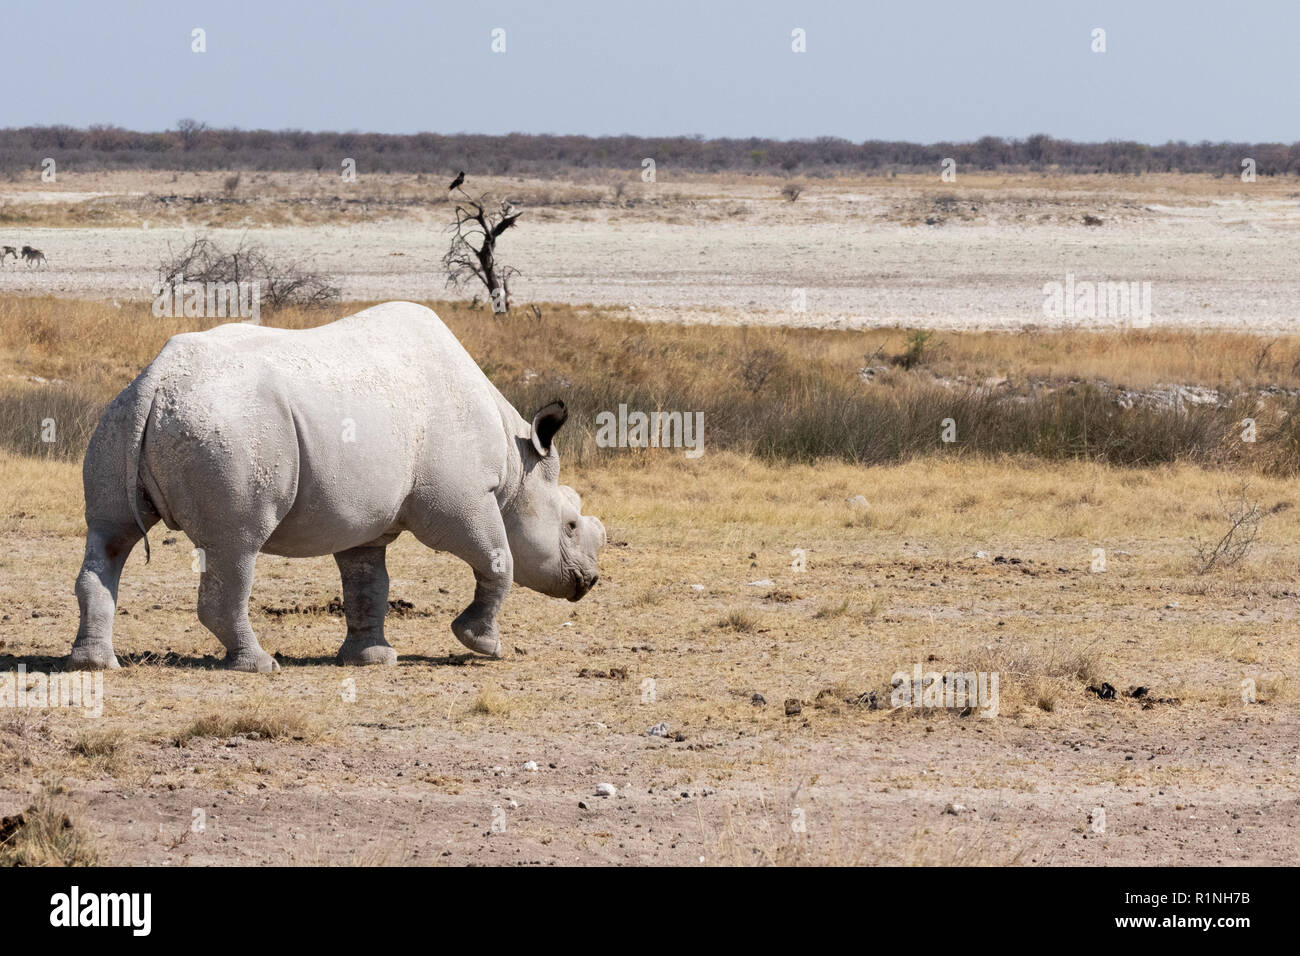 Espèces en danger - un adulte, le rhinocéros blanc Ceratotherium simum , exemple d'animaux en voie de disparition, randonnée pédestre dans le parc national d'Etosha, Namibie, Afrique du Sud Banque D'Images